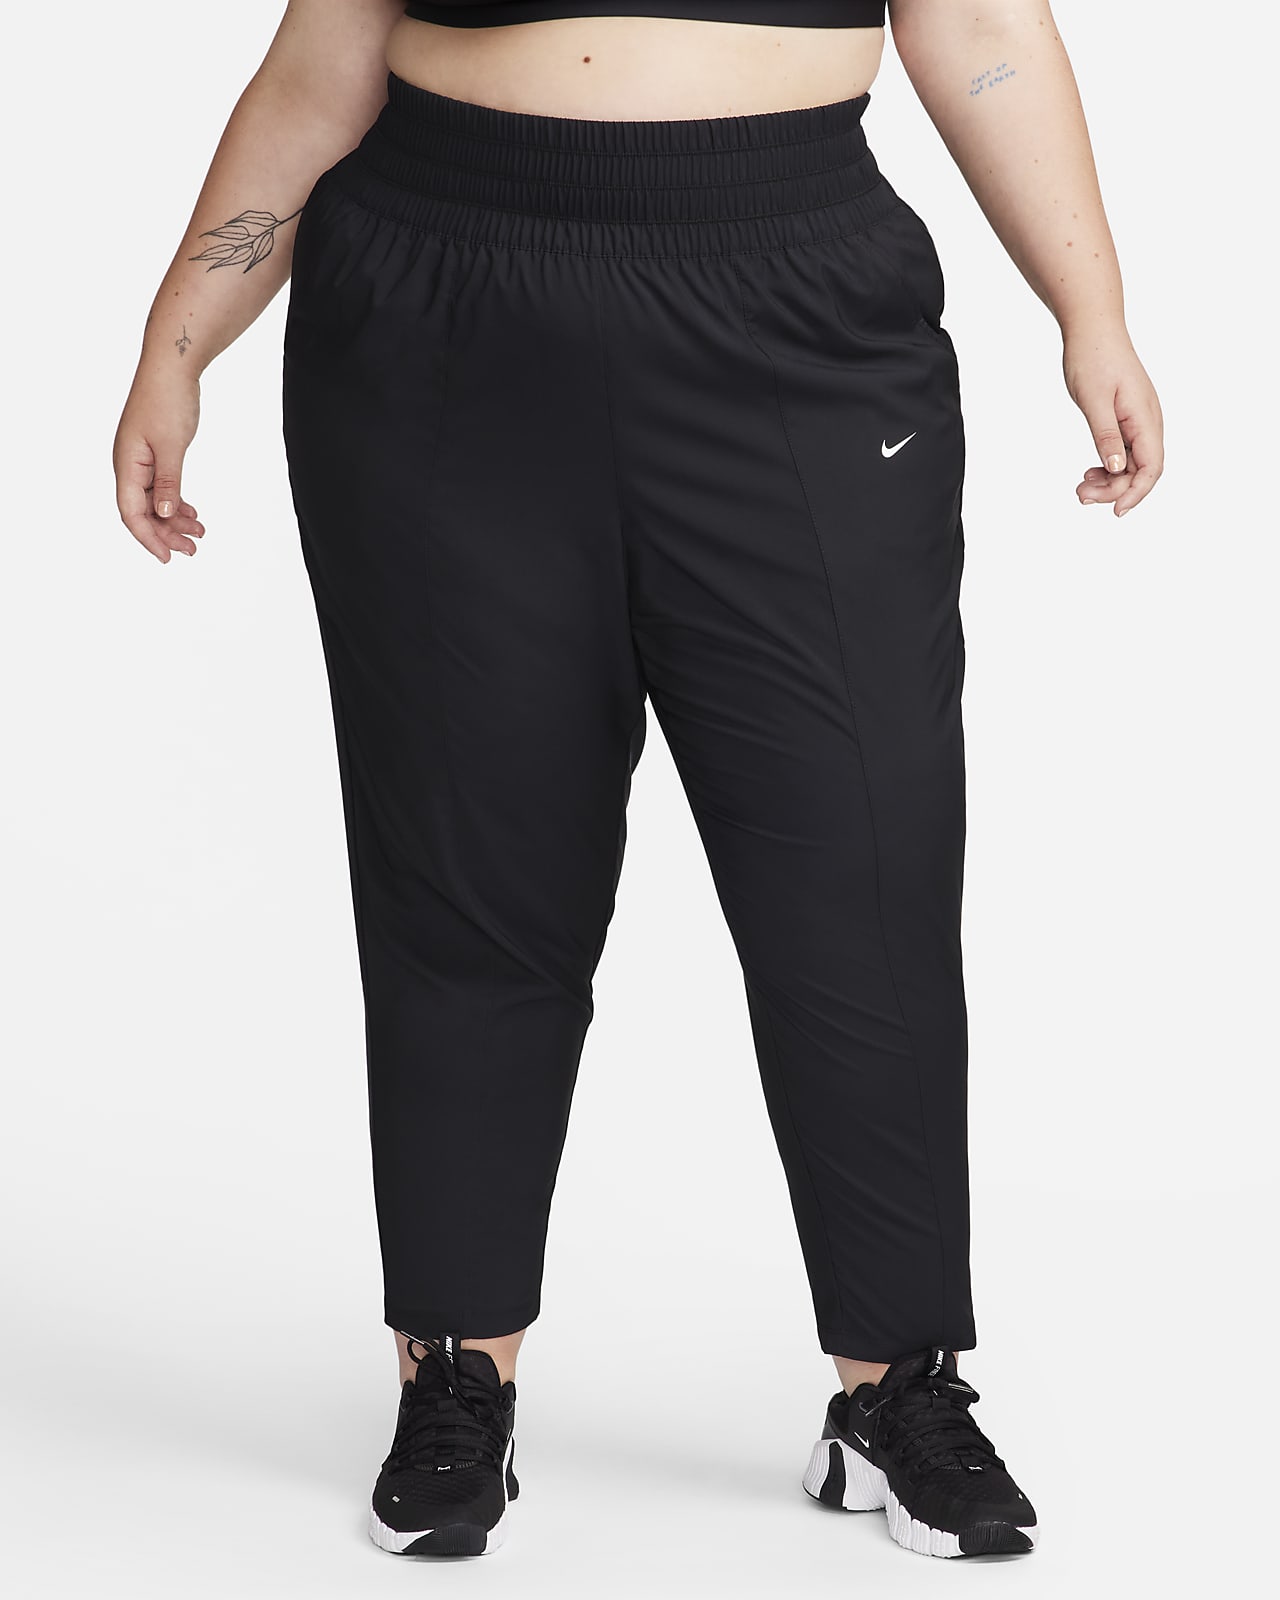 กางเกงขายาวเอวสูงพิเศษผู้หญิง Nike Dri-FIT One (พลัสไซส์)